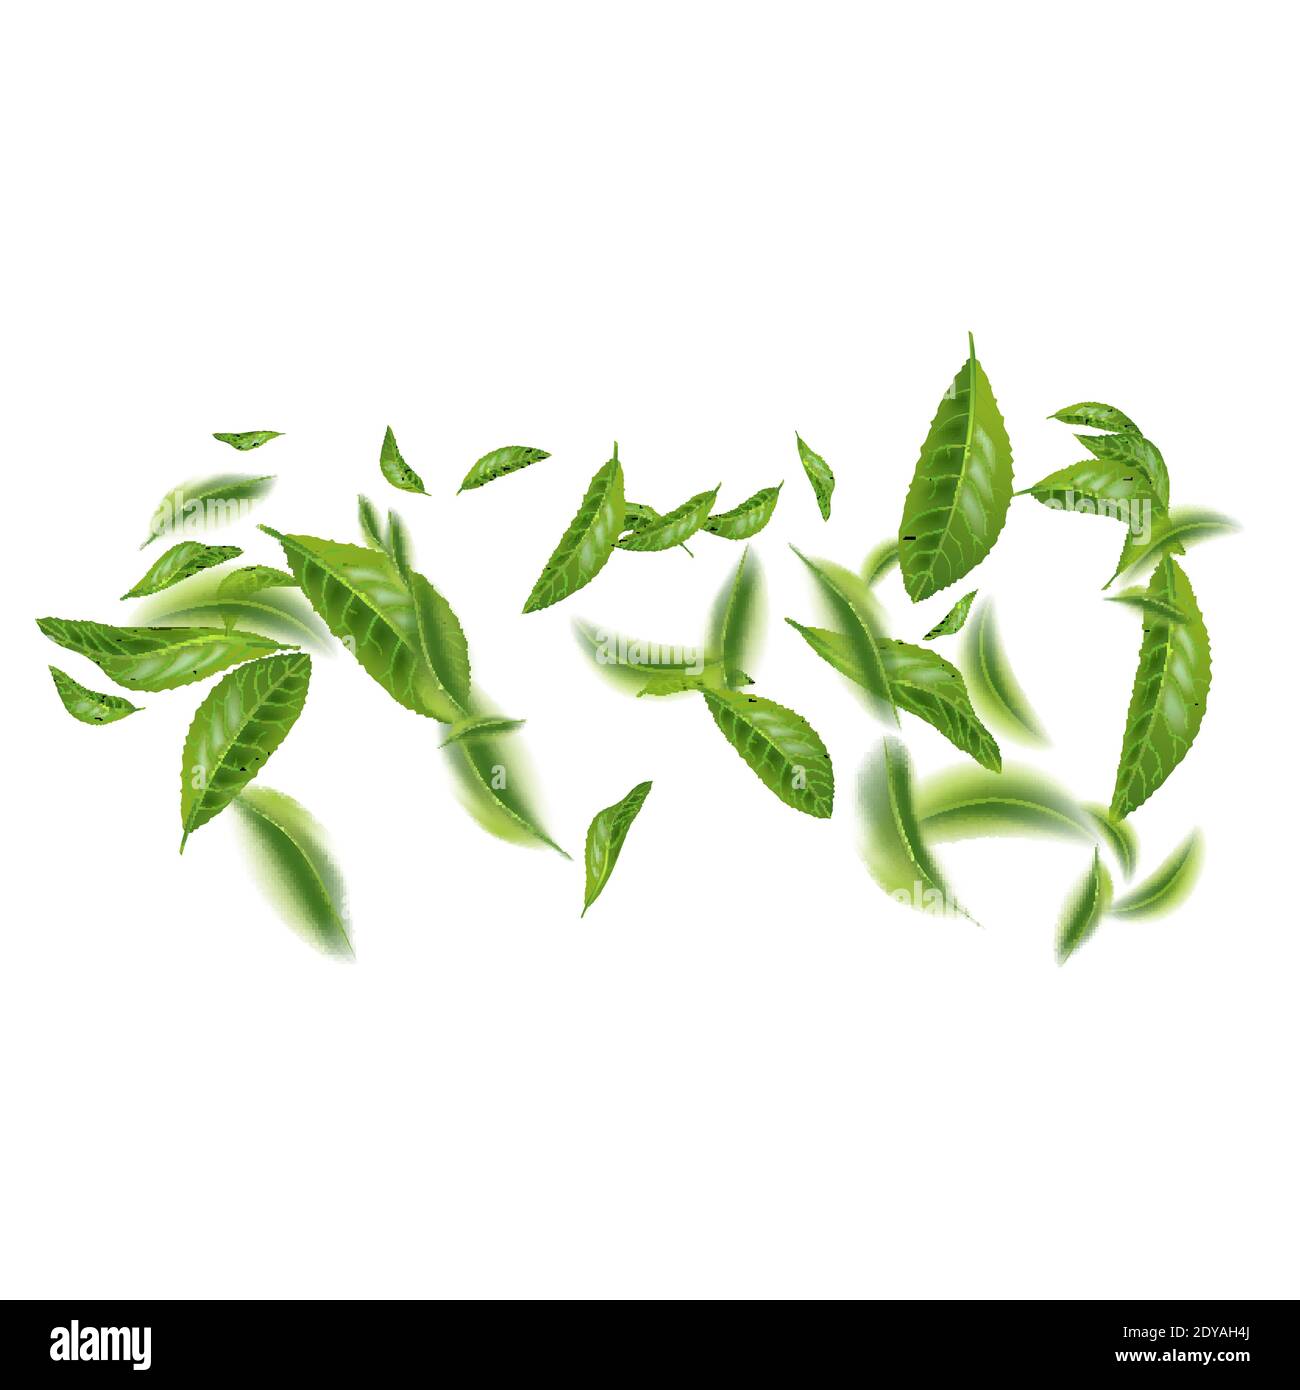 foglie di tè verdi. ceylon indiano o foglia di tè verde cinese con steli,  isolati su sfondo bianco. illustrazione vettoriale 3d realistica 5170811  Arte vettoriale a Vecteezy